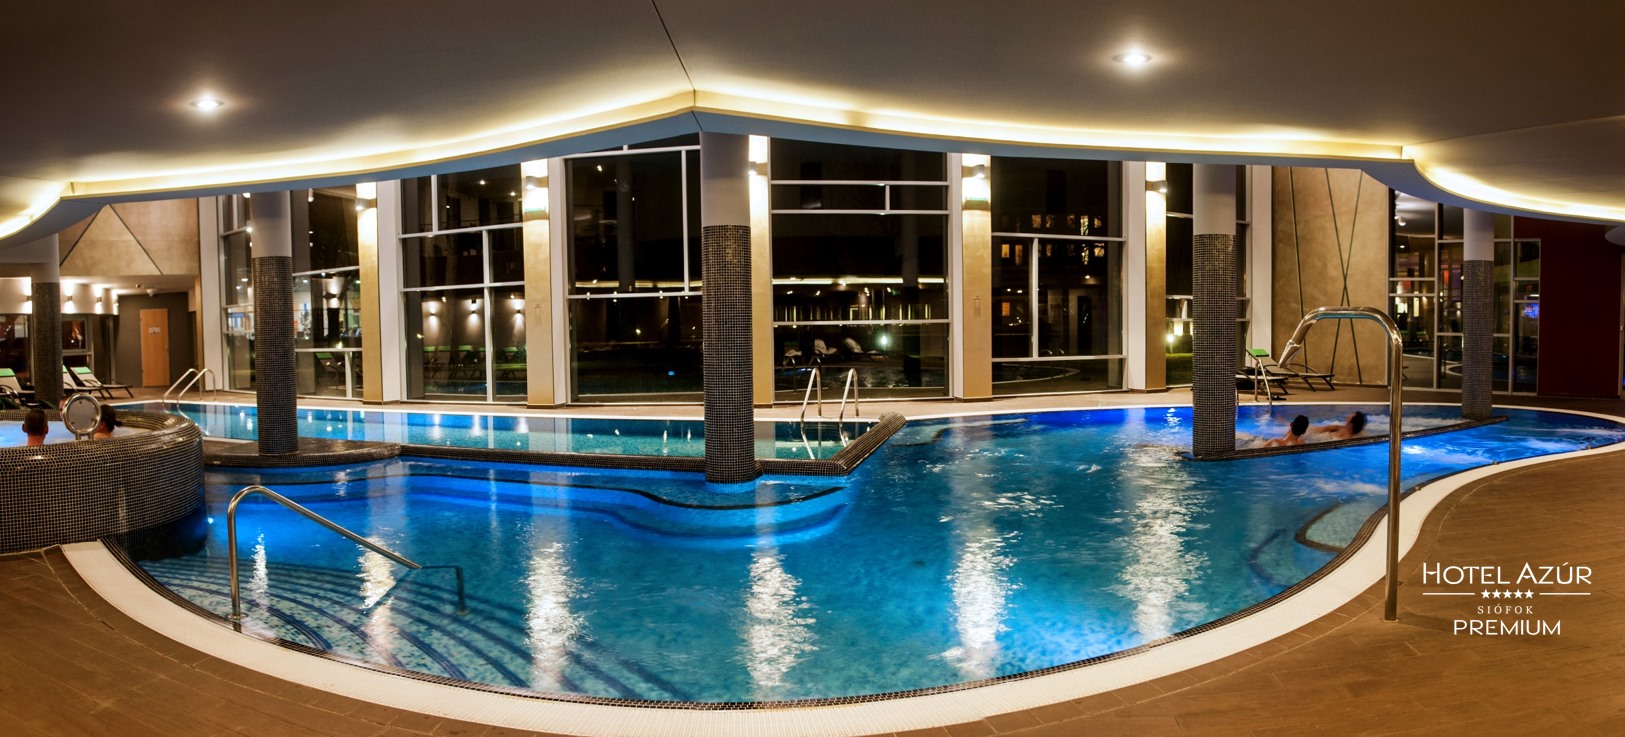 Hotel Azur Premium, баня, гостиница, Венгрия